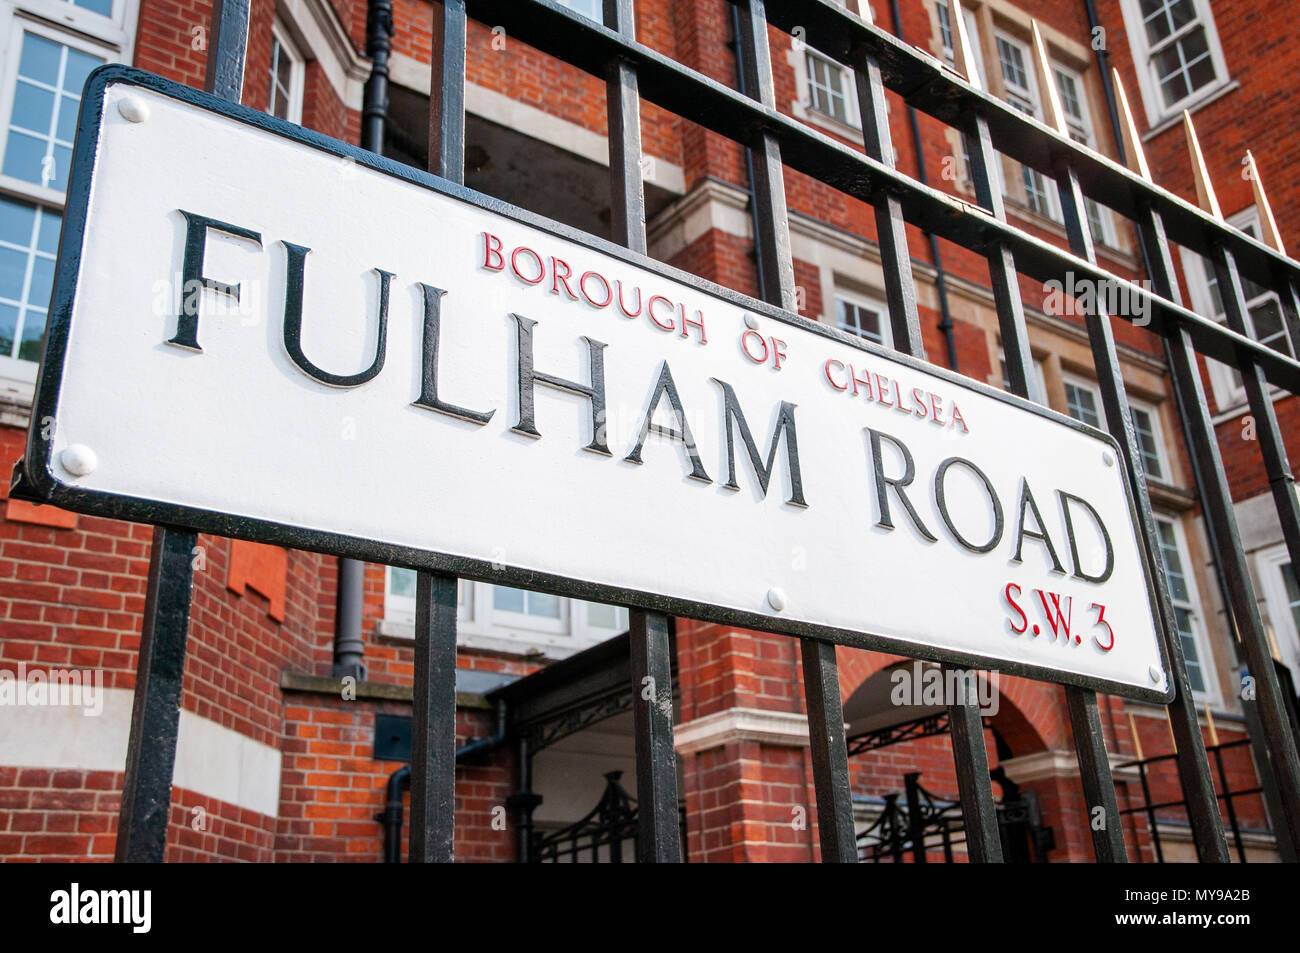 Fulham Road, London, UK Stock Photo